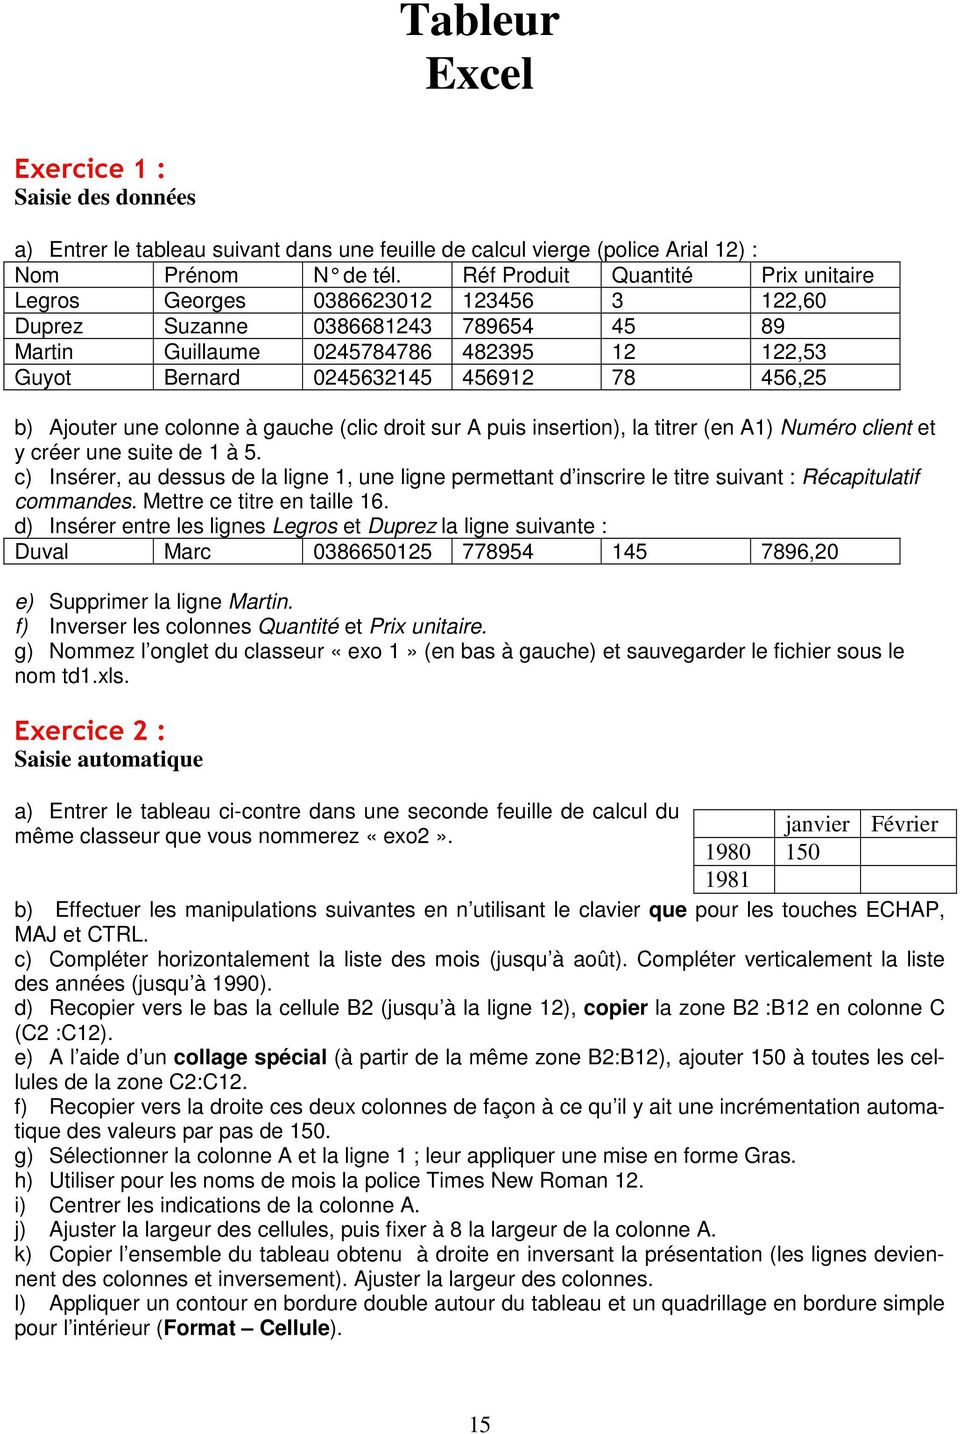 Tableur Excel Exercice 1 Saisie Des Données Exercice 2